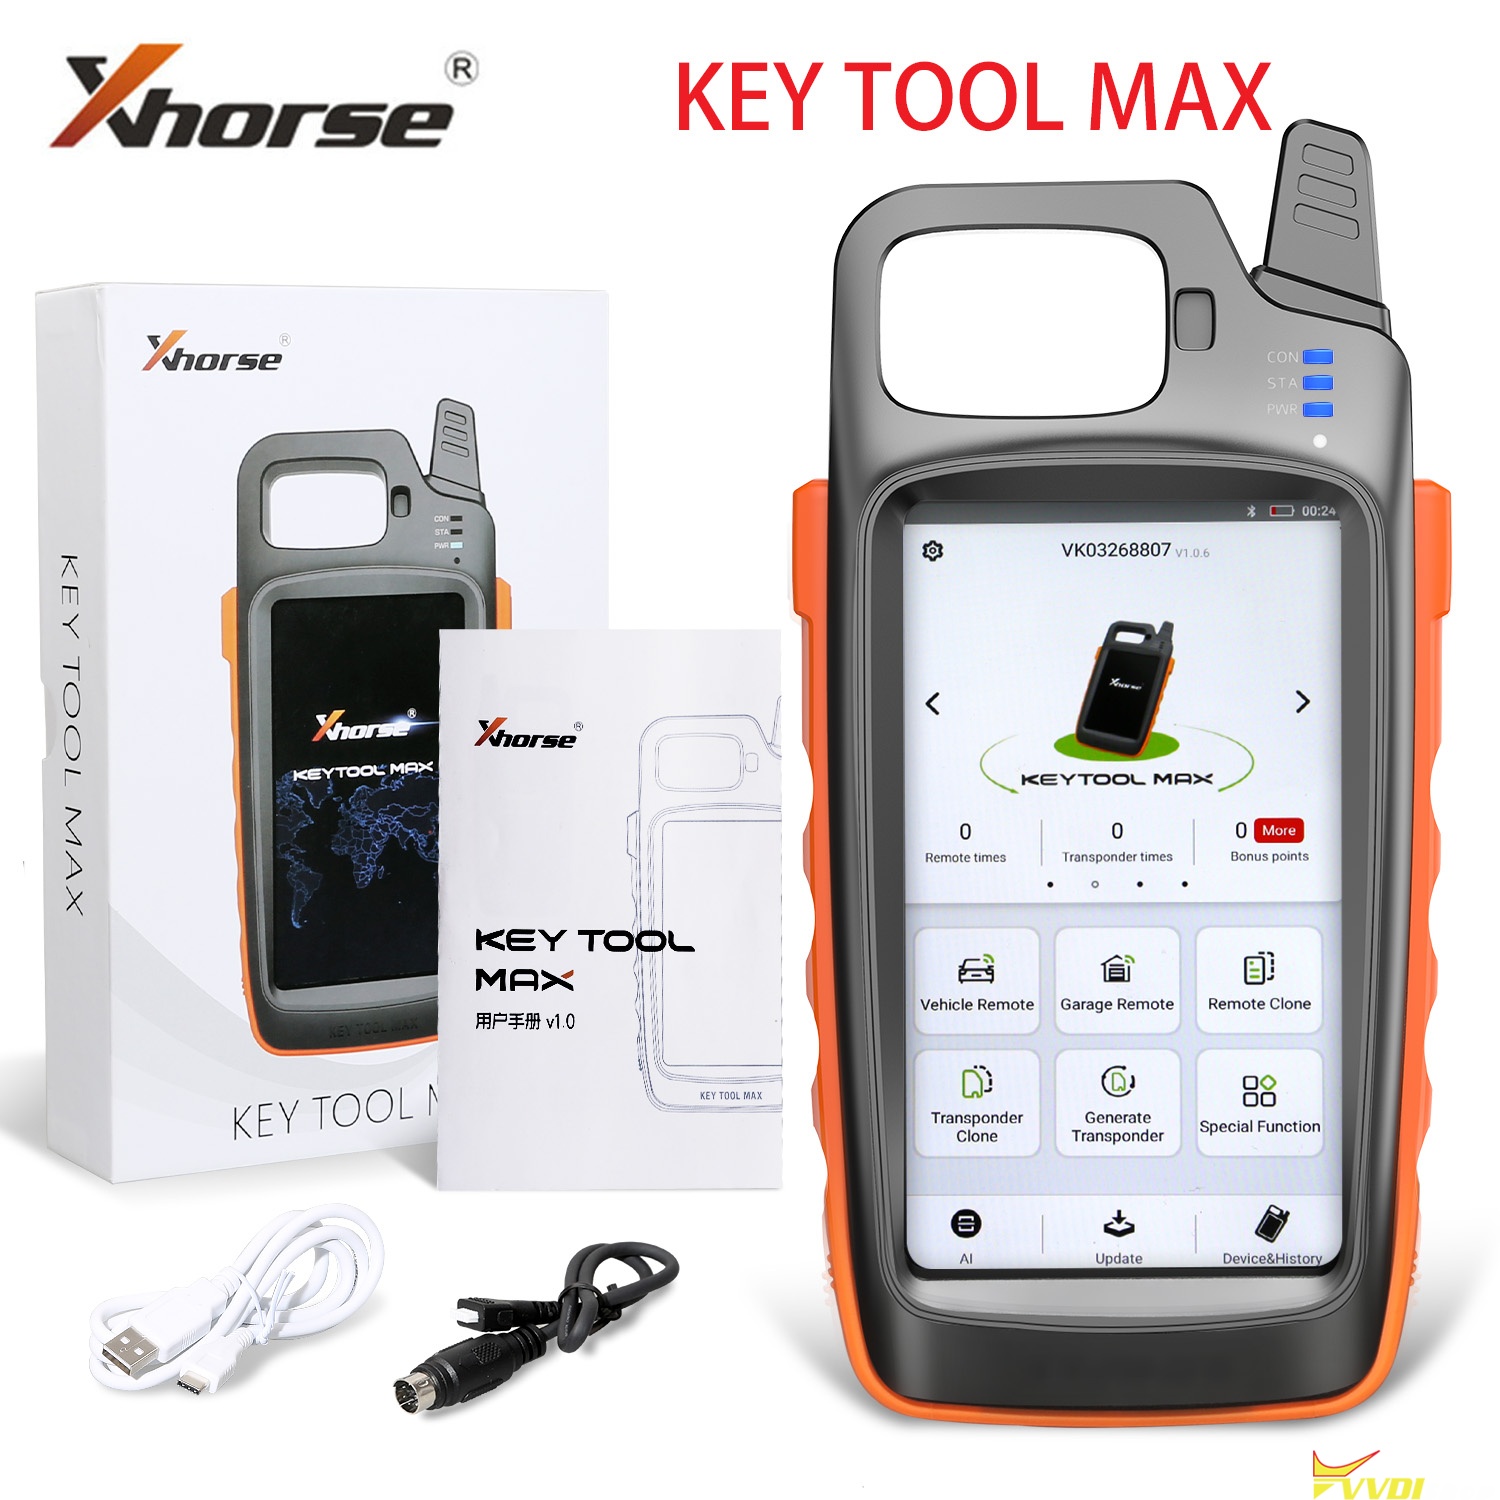 Key Tool Max